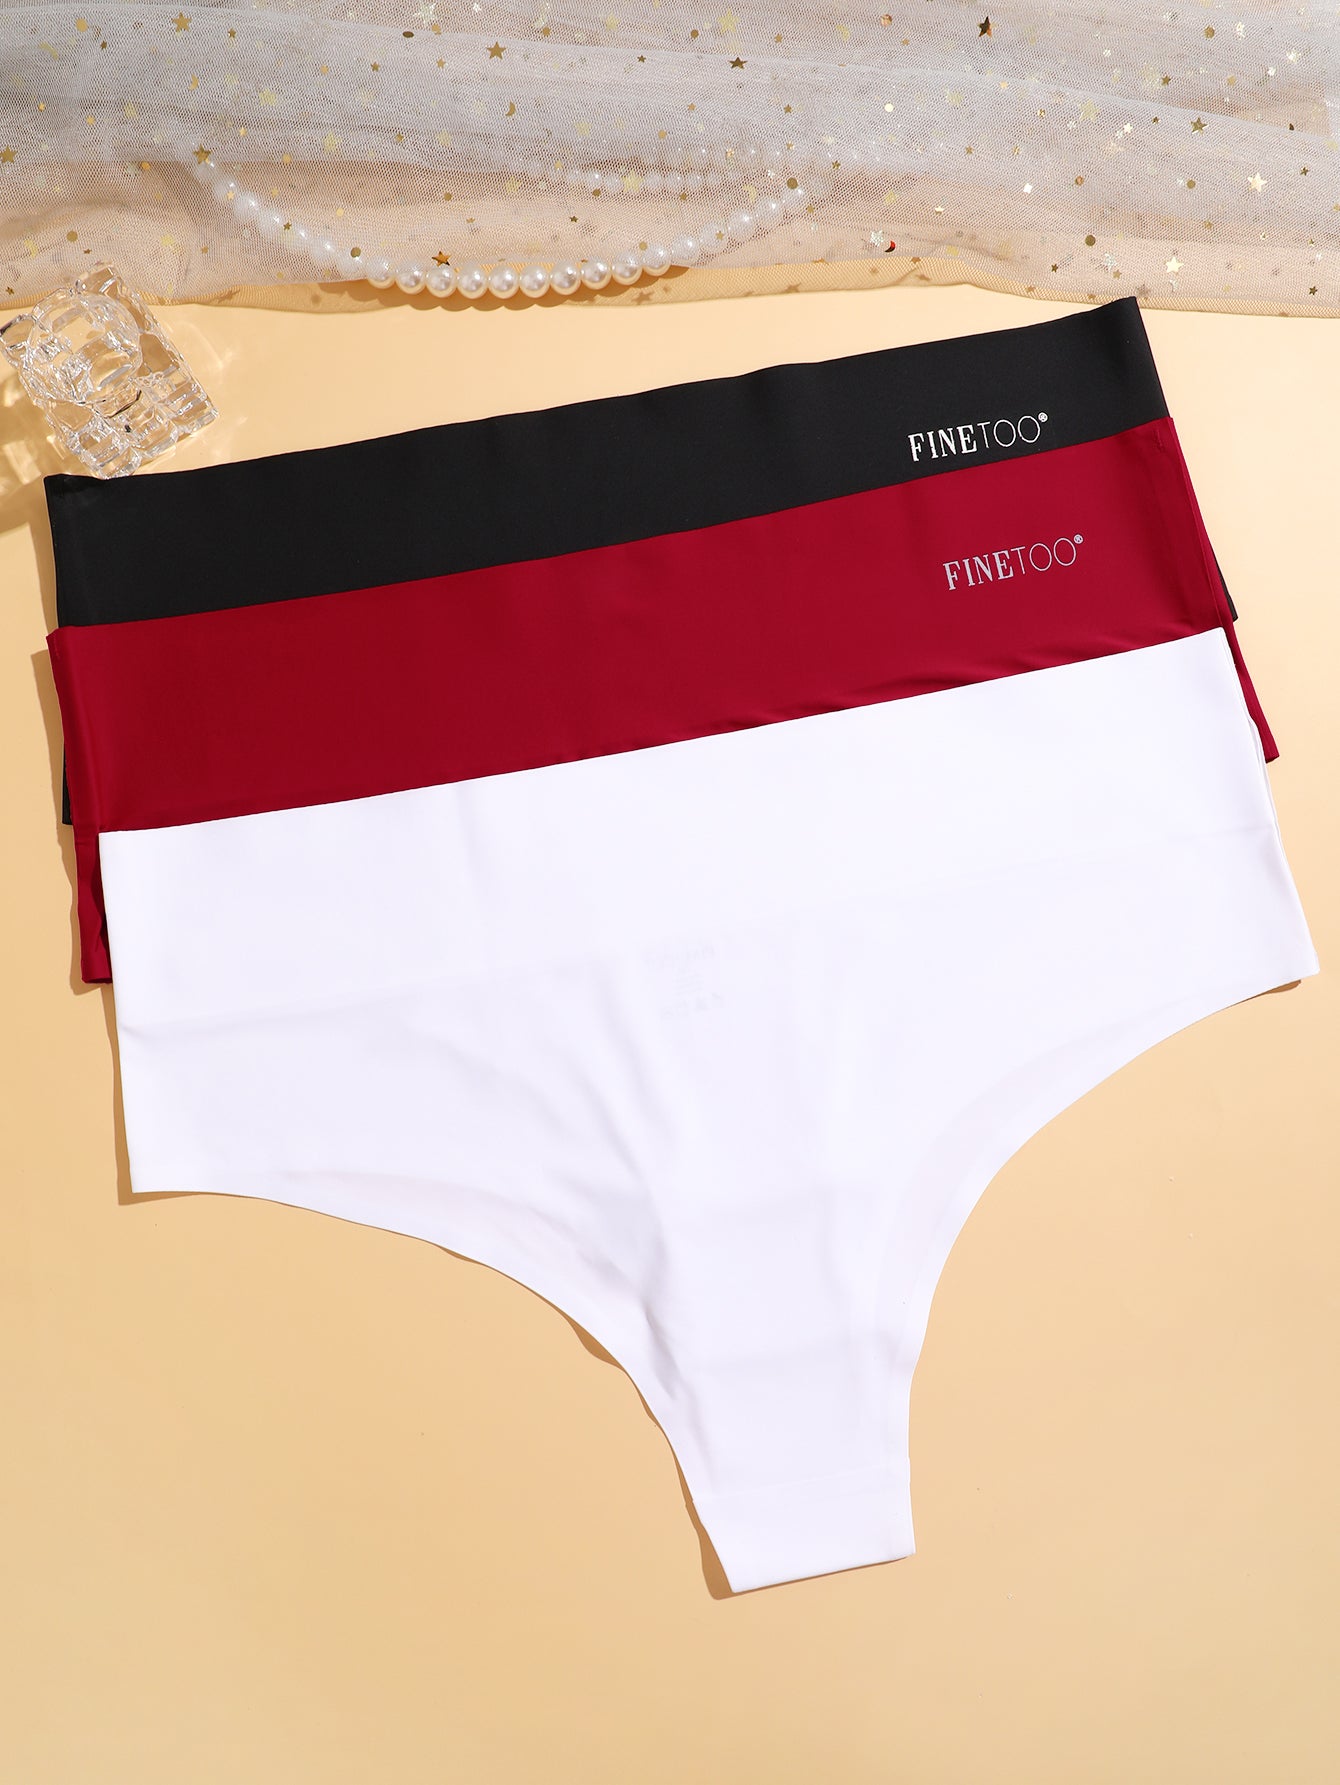 FINETOO Seamless Briefs Women's Seamless Hipster Soft Panties